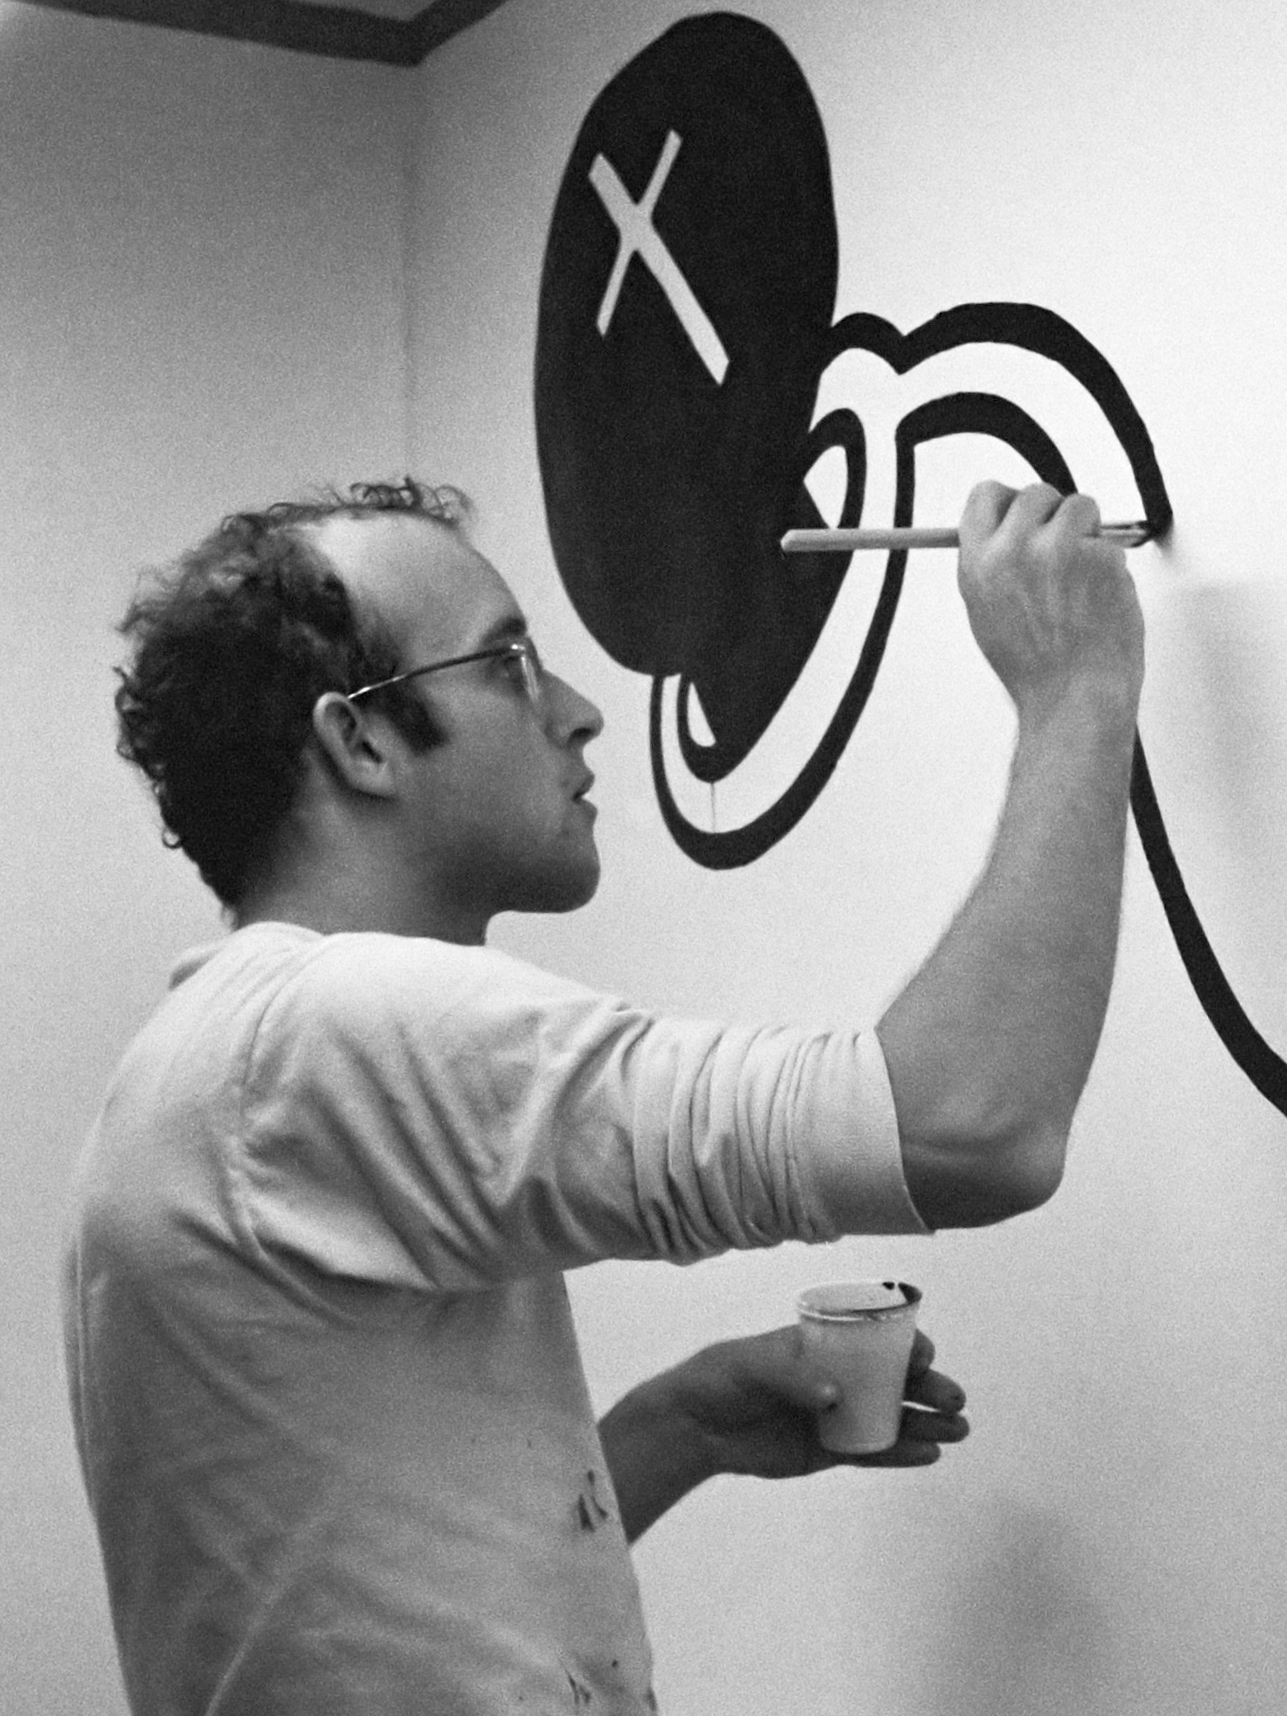 auteur Keith Haring de la citation Je pense que vous devez contrôler les matériaux dans une certaine mesure, mais il est important de laisser les matériaux avoir une sorte de pouvoir pour eux-mêmes; Comme le pouvoir naturel de la gravité, si vous peignez sur un mur, il fait couler la peinture et il coule; Il n'y a aucune raison de combattre cela.